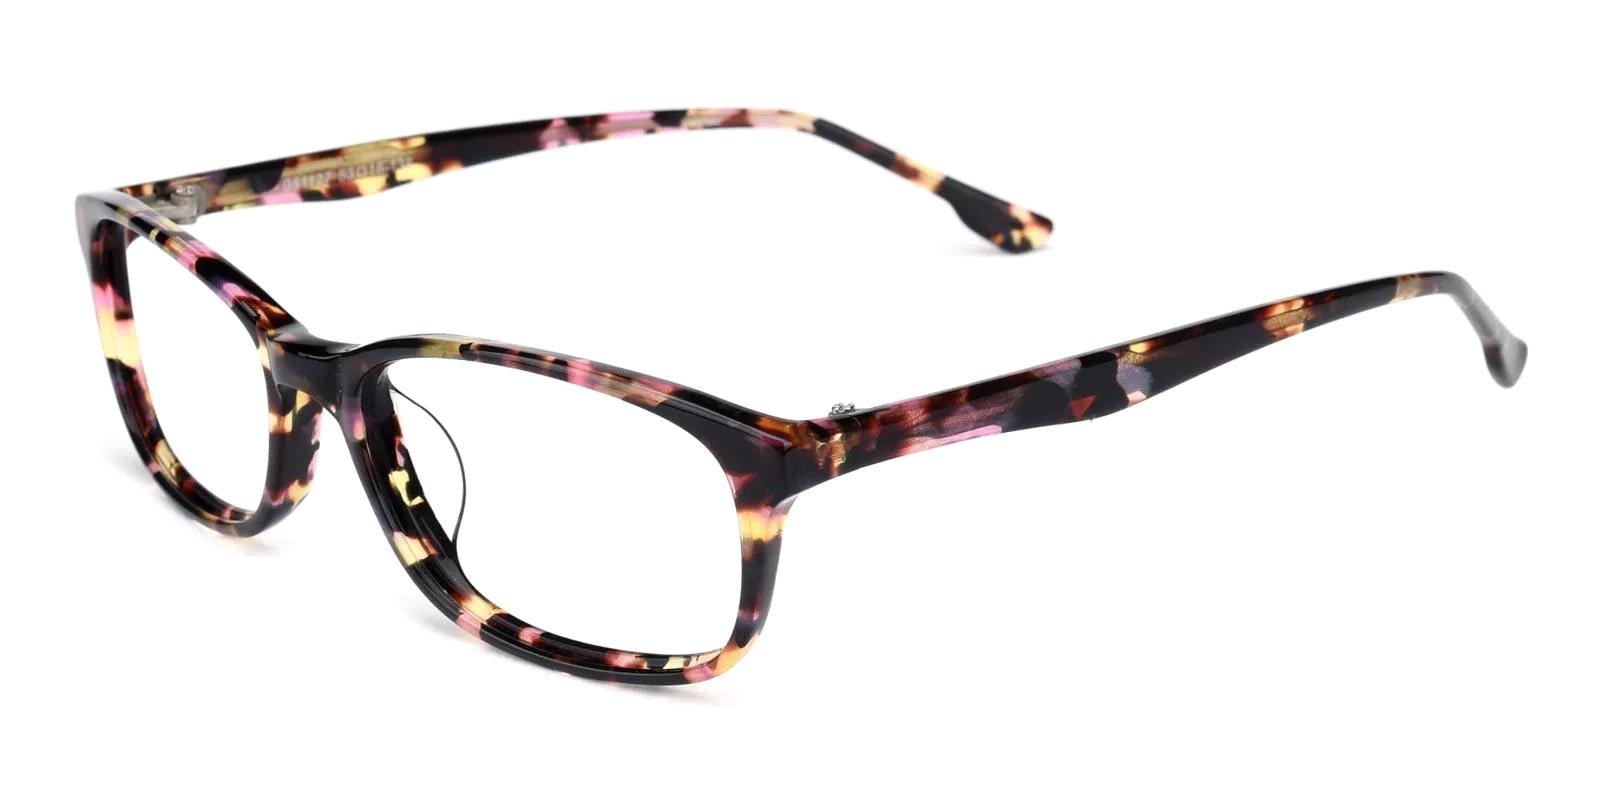 Tendant Pattern Acetate Eyeglasses , UniversalBridgeFit Frames from ABBE Glasses